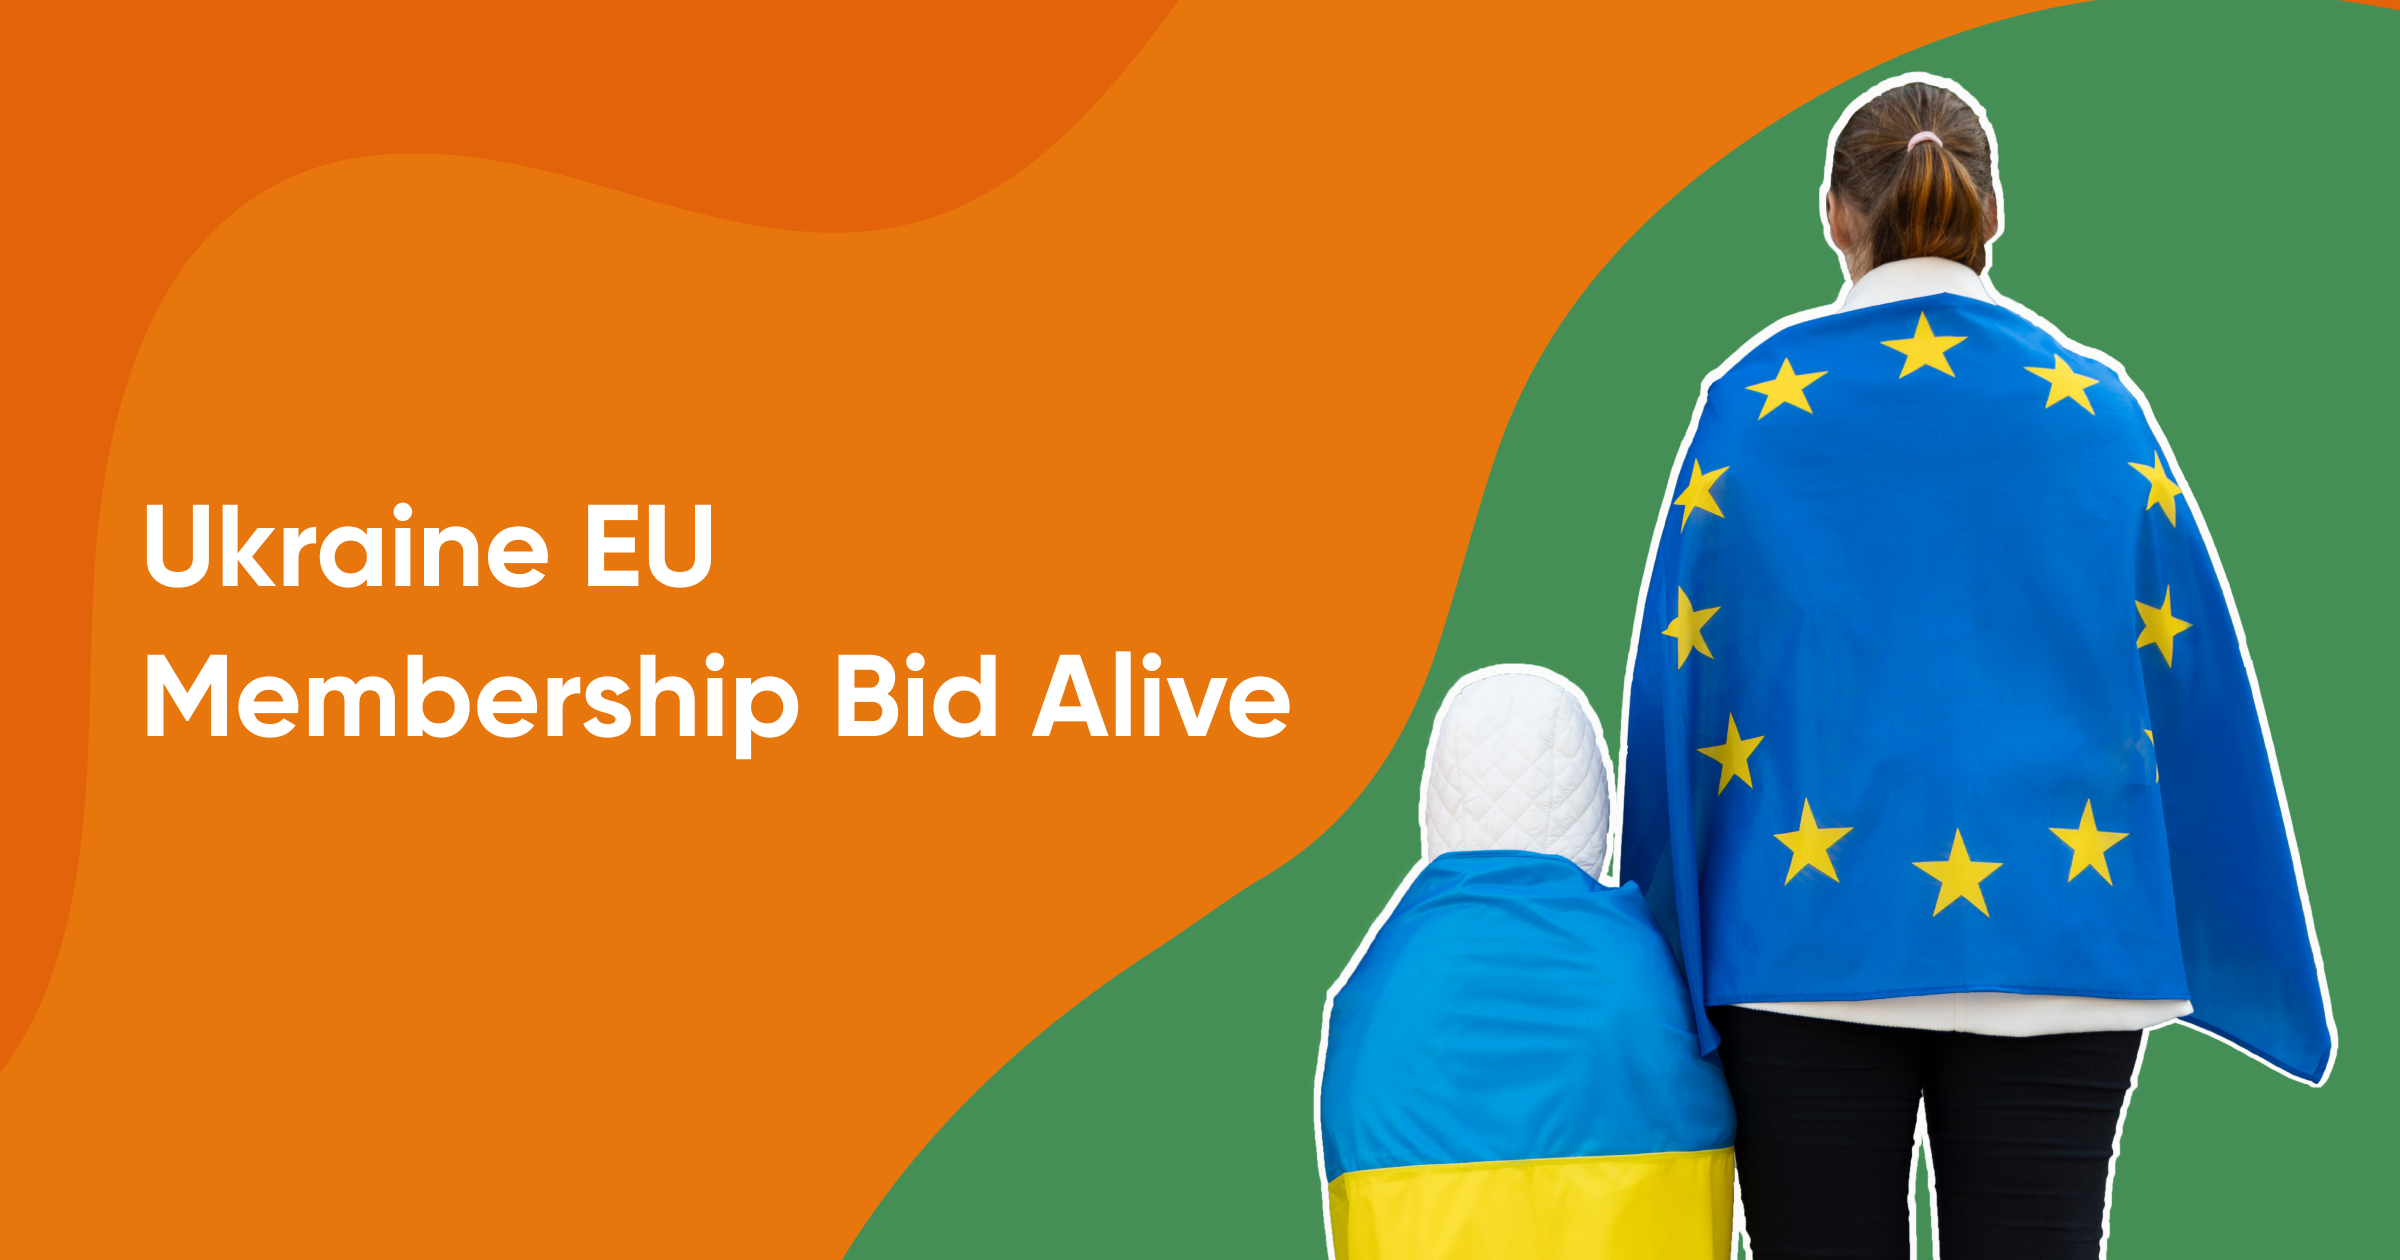 Ukraine EU membership compliance